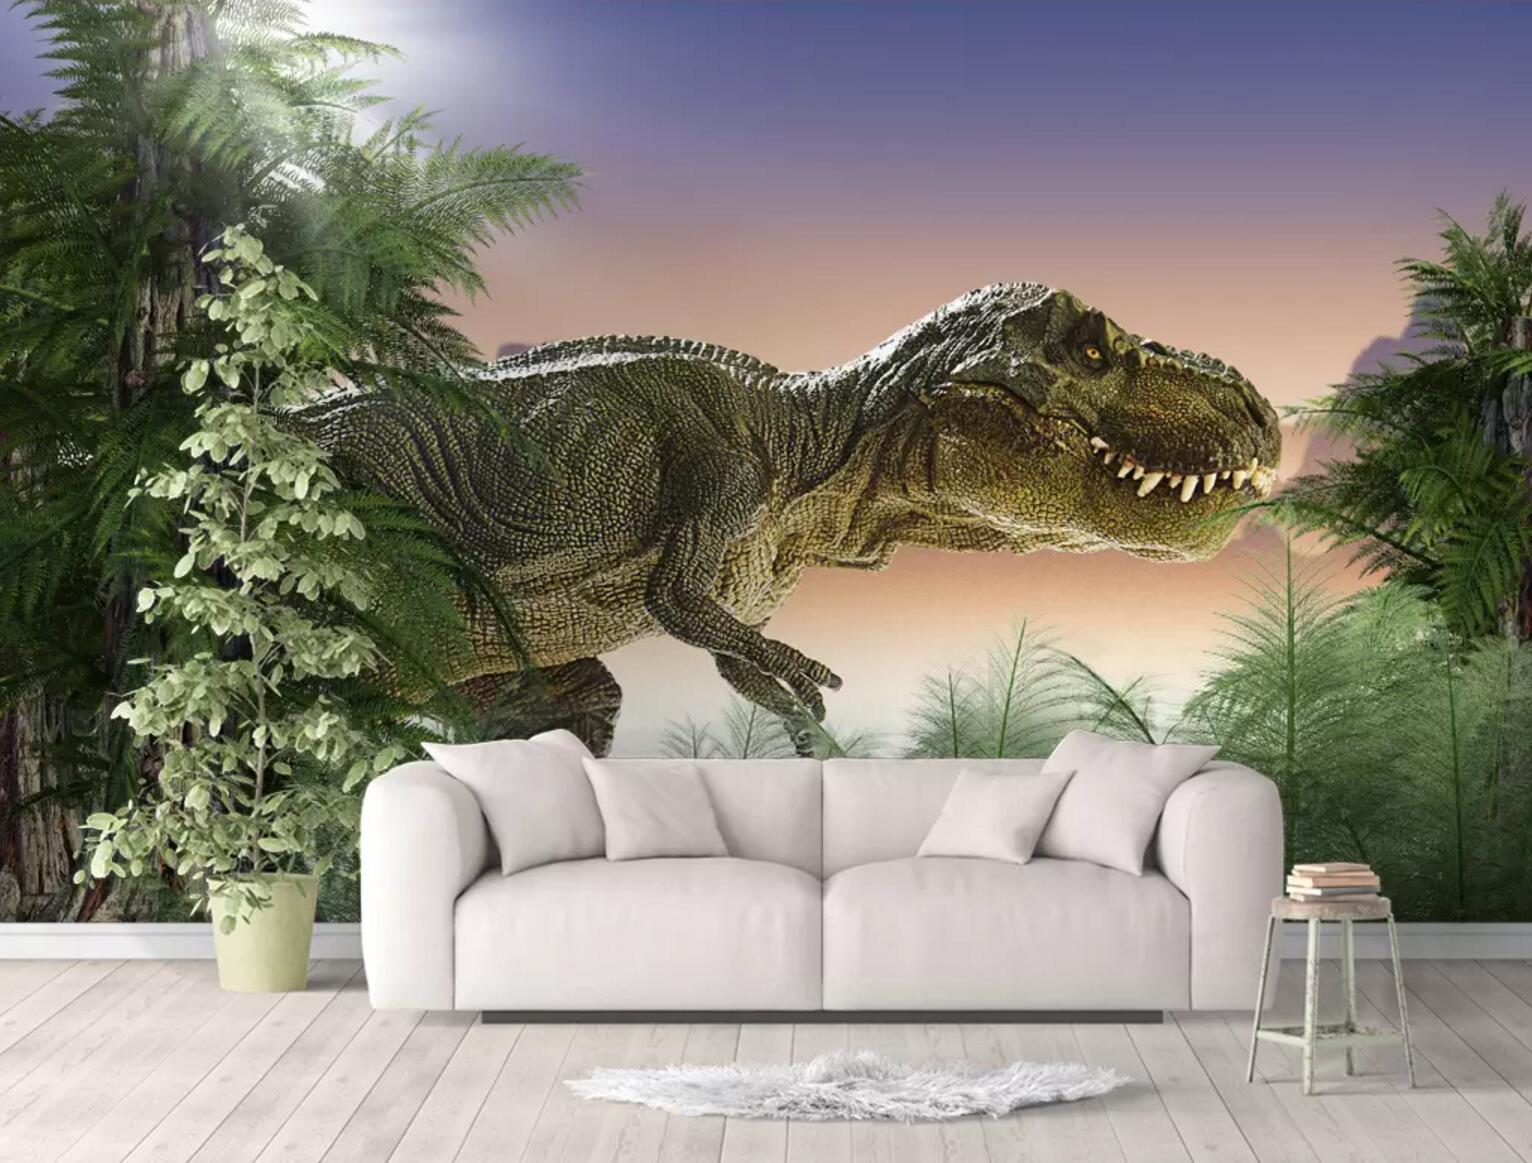 3D Dinosaur Tree 246 Wallpaper AJ Wallpaper 